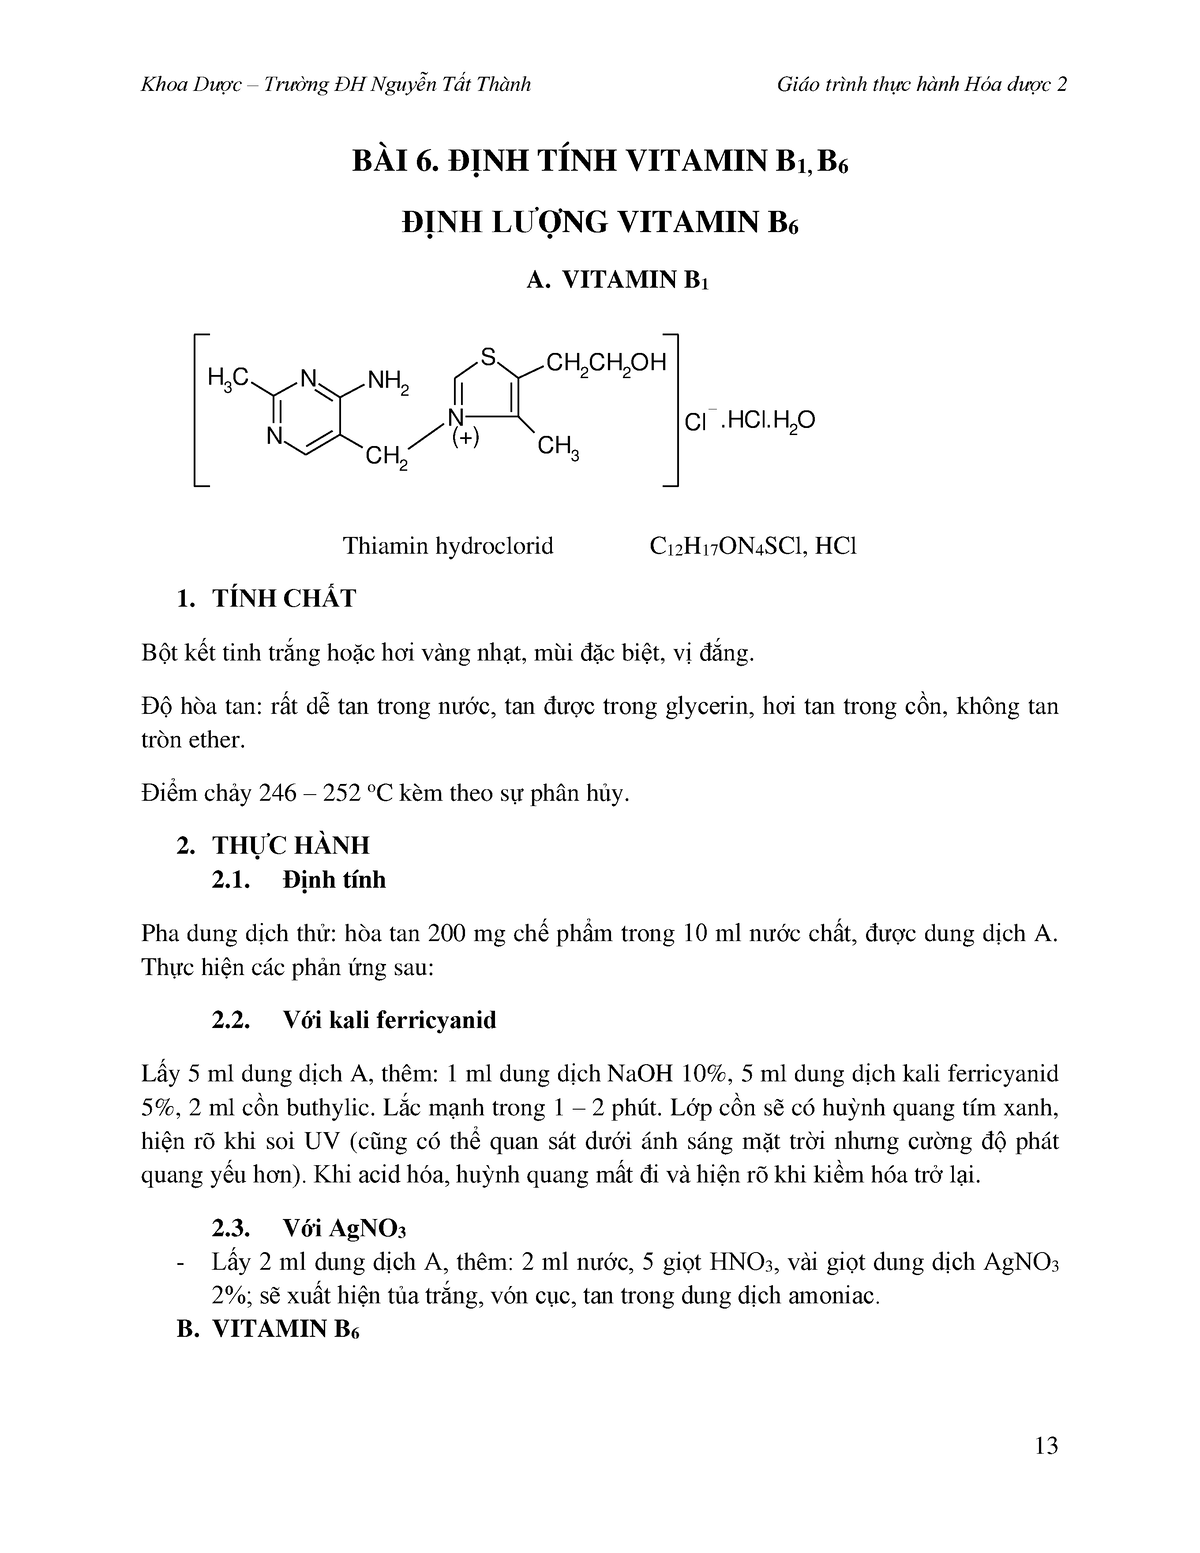 Định tính vitamin B1 được xác định như thế nào?